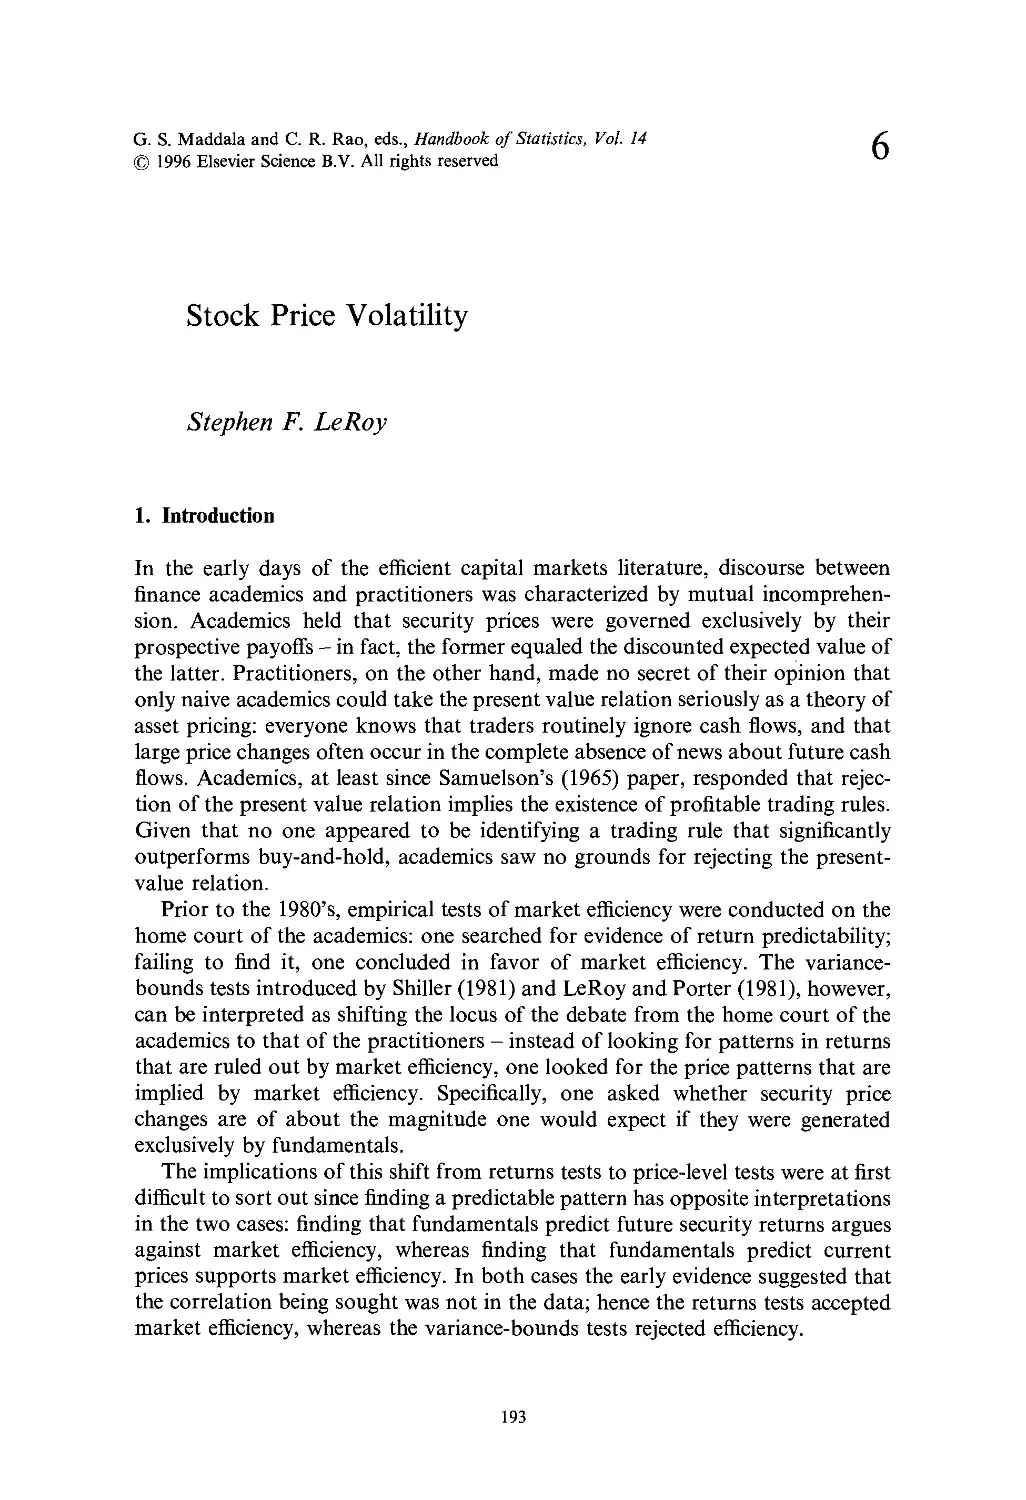 6. Stock Price Volatility